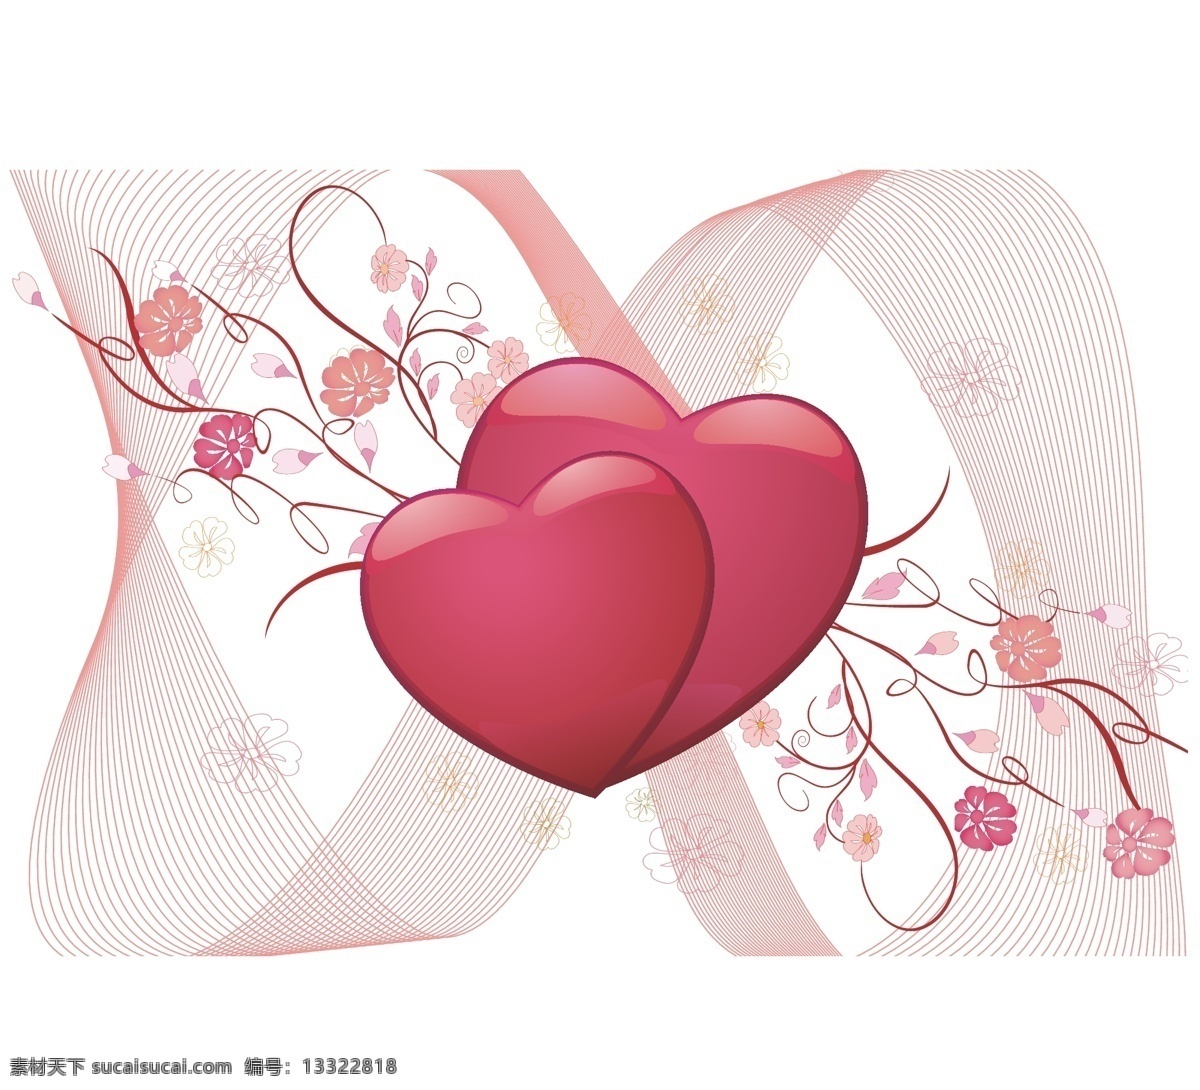 移门 图案 韩式 花纹 玫瑰 曲线 碎花 线条 心 心心相印 移门图案 矢量 装饰素材